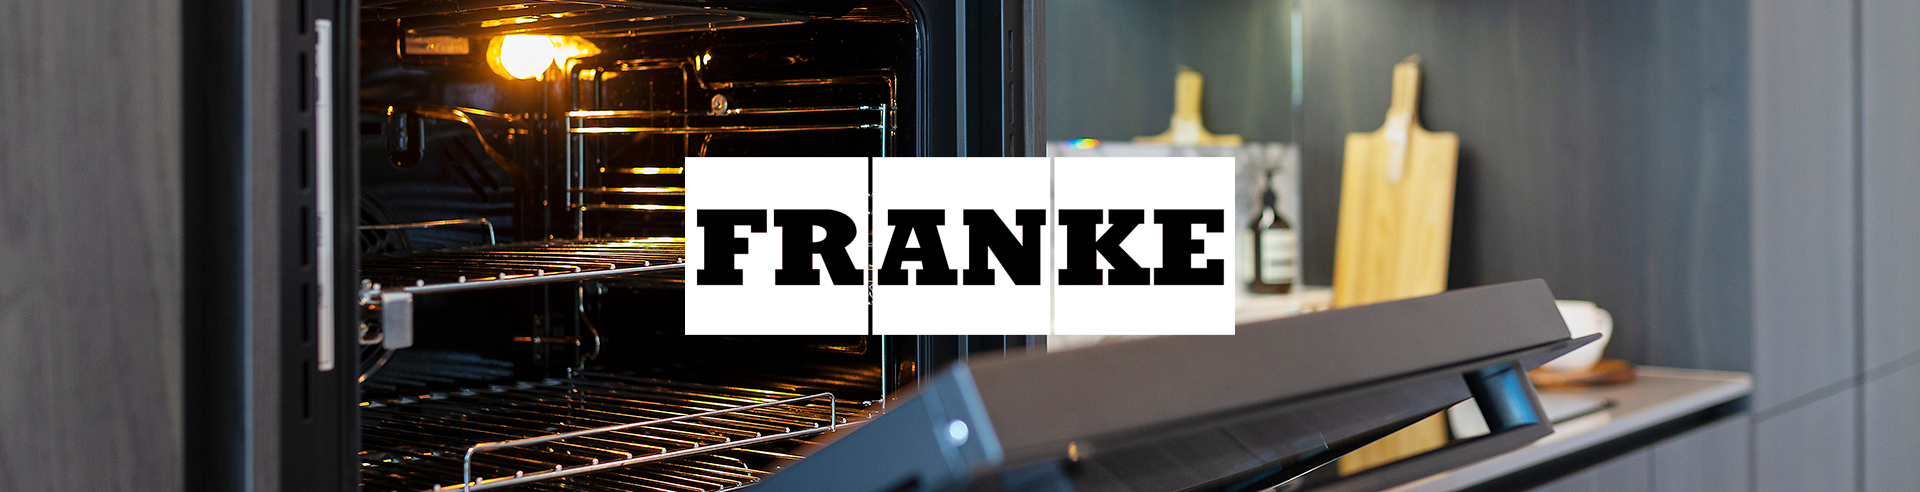 Franke Appliances header 1920x492px.png